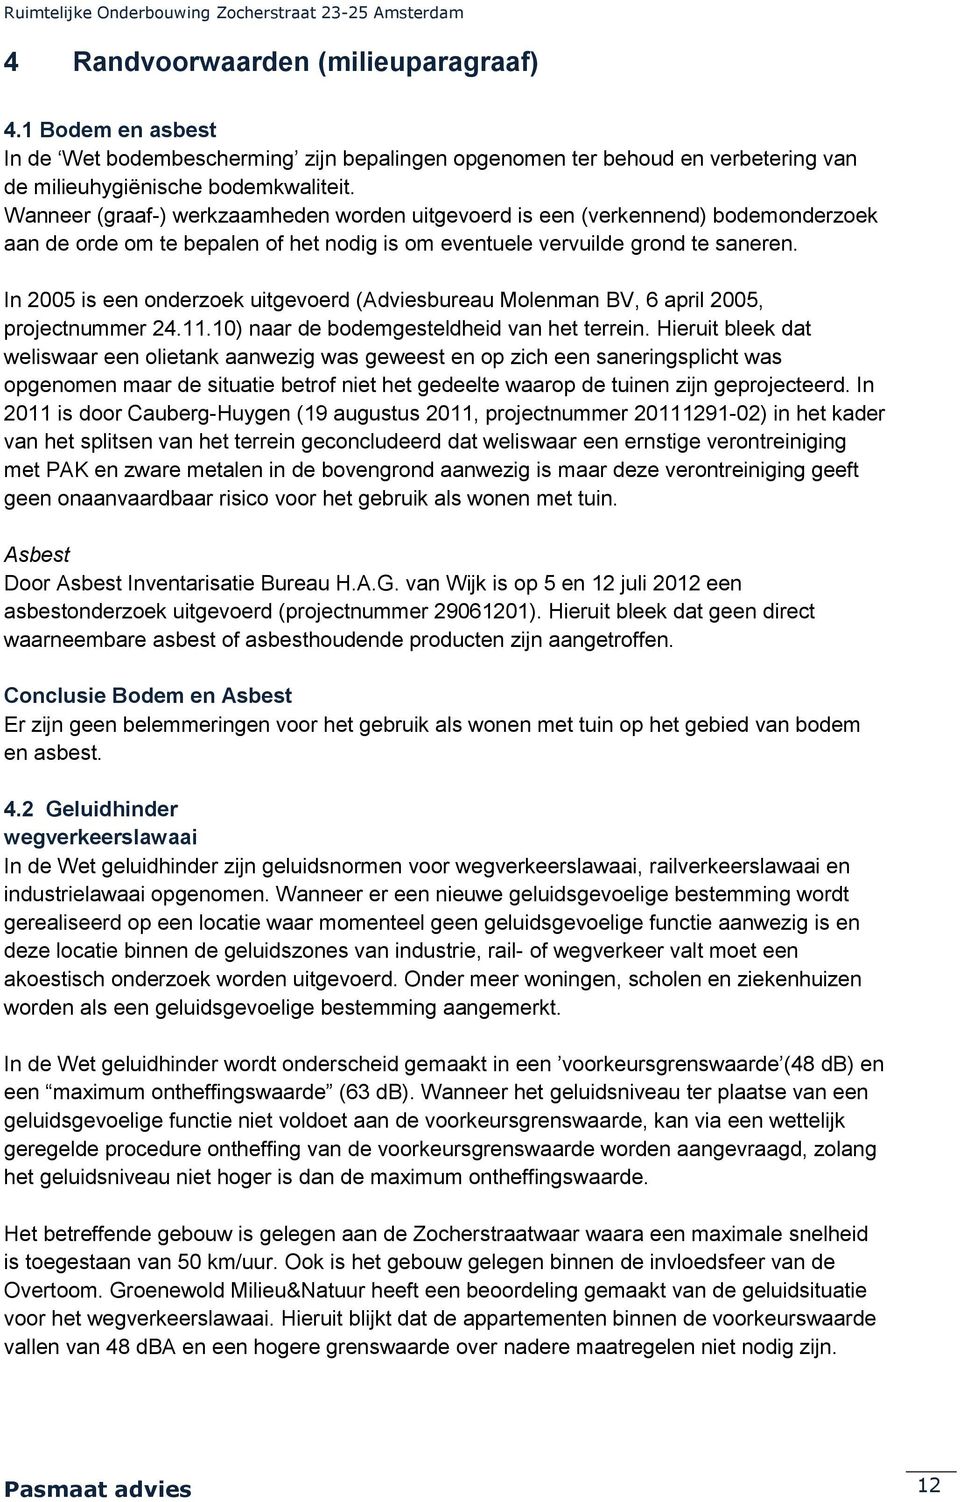 In 2005 is een onderzoek uitgevoerd (Adviesbureau Molenman BV, 6 april 2005, projectnummer 24.11.10) naar de bodemgesteldheid van het terrein.